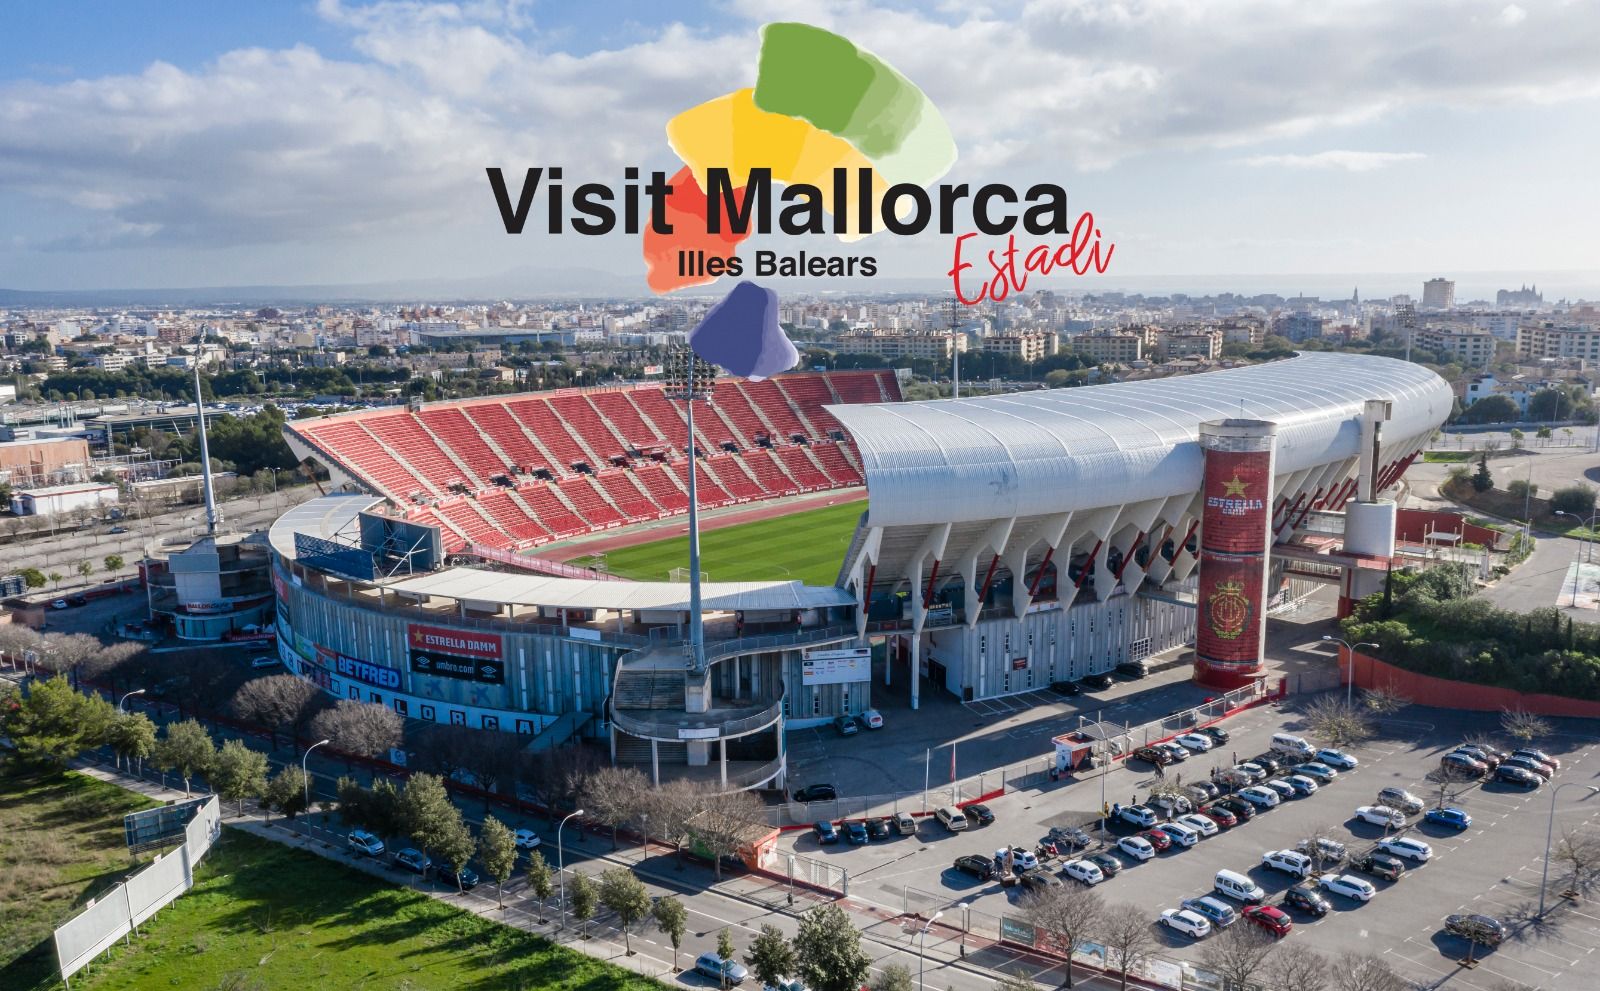 Stadion klub Real Mallorca akan berganti nama menjadi Visit Mallorca.